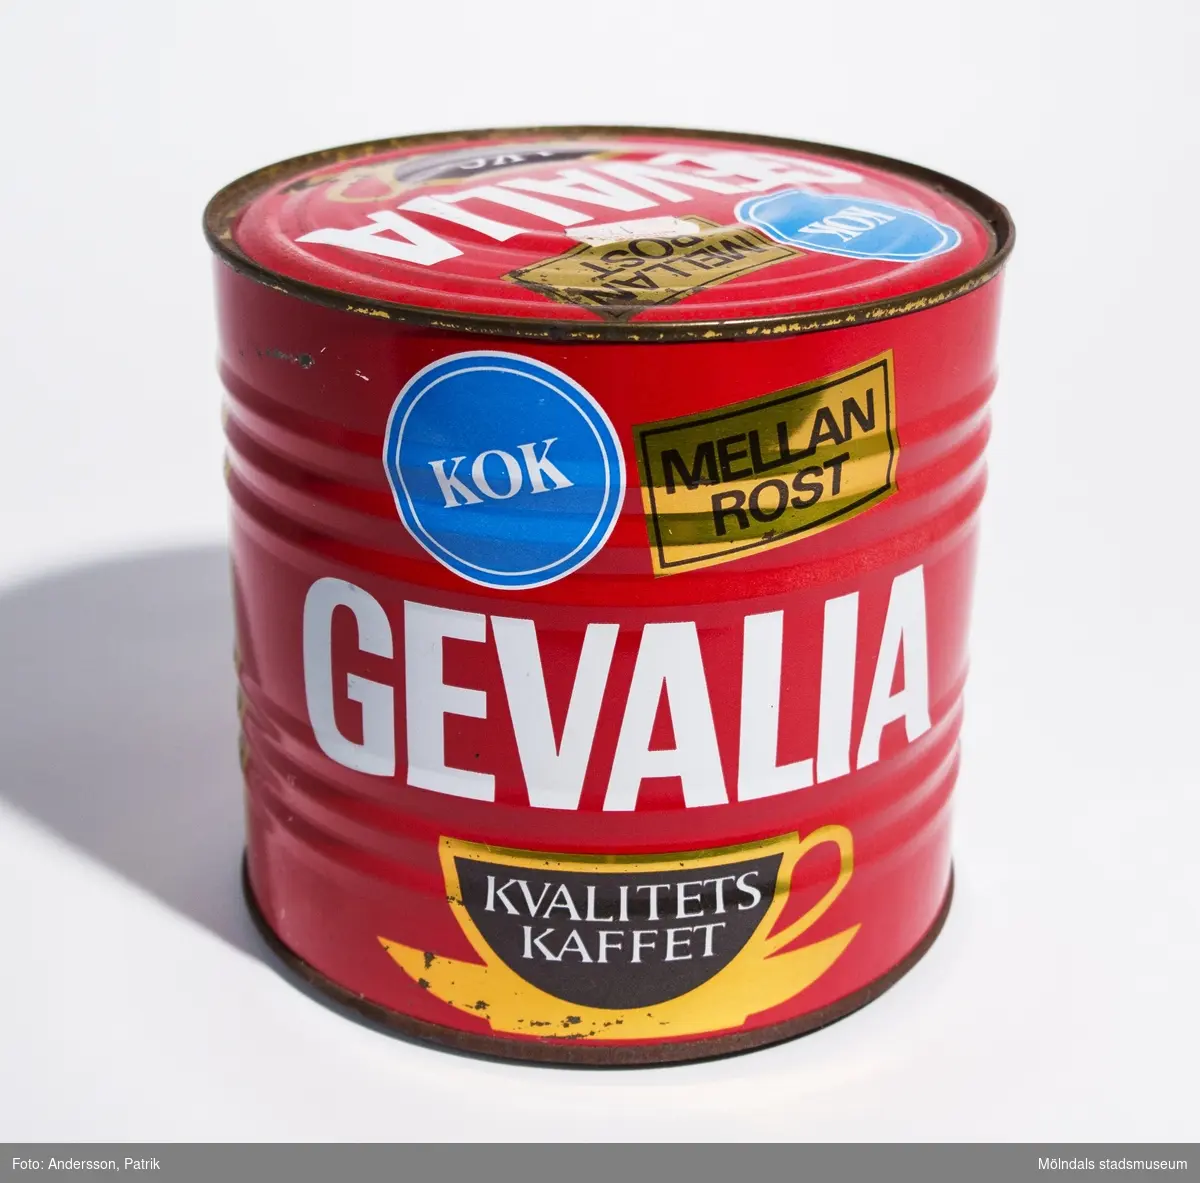 Plåtburk som innehåller 1 kg Gevalia Kokkaffe Mellanrost, tillverkat av Victor Th Engwall & Co KB, Gevaliarosteriet i Gävle. Troligtvis tillverkad mellan 1957-1971.
Burken är oöppnad. Man måste använda konservöppnare för att öppna den.

Burken är röd. På burken finns texten: "KOK MELLAN ROST GEVALIA", tryckt i färgerna blått, vitt, guld och brunt. Bredvid finns en guld och brunfärgad kaffekopp med texten "KVALITETS KAFFET". Mot guldfärgad bakgrund finns även texten: 
"KUNGL. HOVLEVERANTÖR
1 kg
Gevalias jämna och höga kvalitet uppnås genom bladning av de bästa kaffesorterna från högbelägna plantager huvudsakligen i Centralamerika, Colombia, Brasilien, Kenya och Tanzania.
Olika råkaffen varierar i kvalitet mellan olika skördar och säsonger. För att Gelvaliasmaken ändå skall vara densamma år efter år sker en ständig finjustering av blandningen, samt provning och kontroll av råkaffe och färdig produkt. 
I oöppnad förpackning bibehålles Gevalias fylliga arom under minst ett år. Sedan burken öppnats bör den förses med tättslutande lock och lagras torrt och gärna svalt.
Om Du har några frågor om kaffe eller om Gevalia - ring till oss på Gevalia Konsumentkontakt 026/10 06 80.
Gevaliarosteriet. Vict. Th. Engwall & Co, KB, Gävle"
På locket finns också en vit prisetikett (klisteretikett): "HEMKÖP CENTRALEN 17.25".
Burken är något sliten och kantstött.